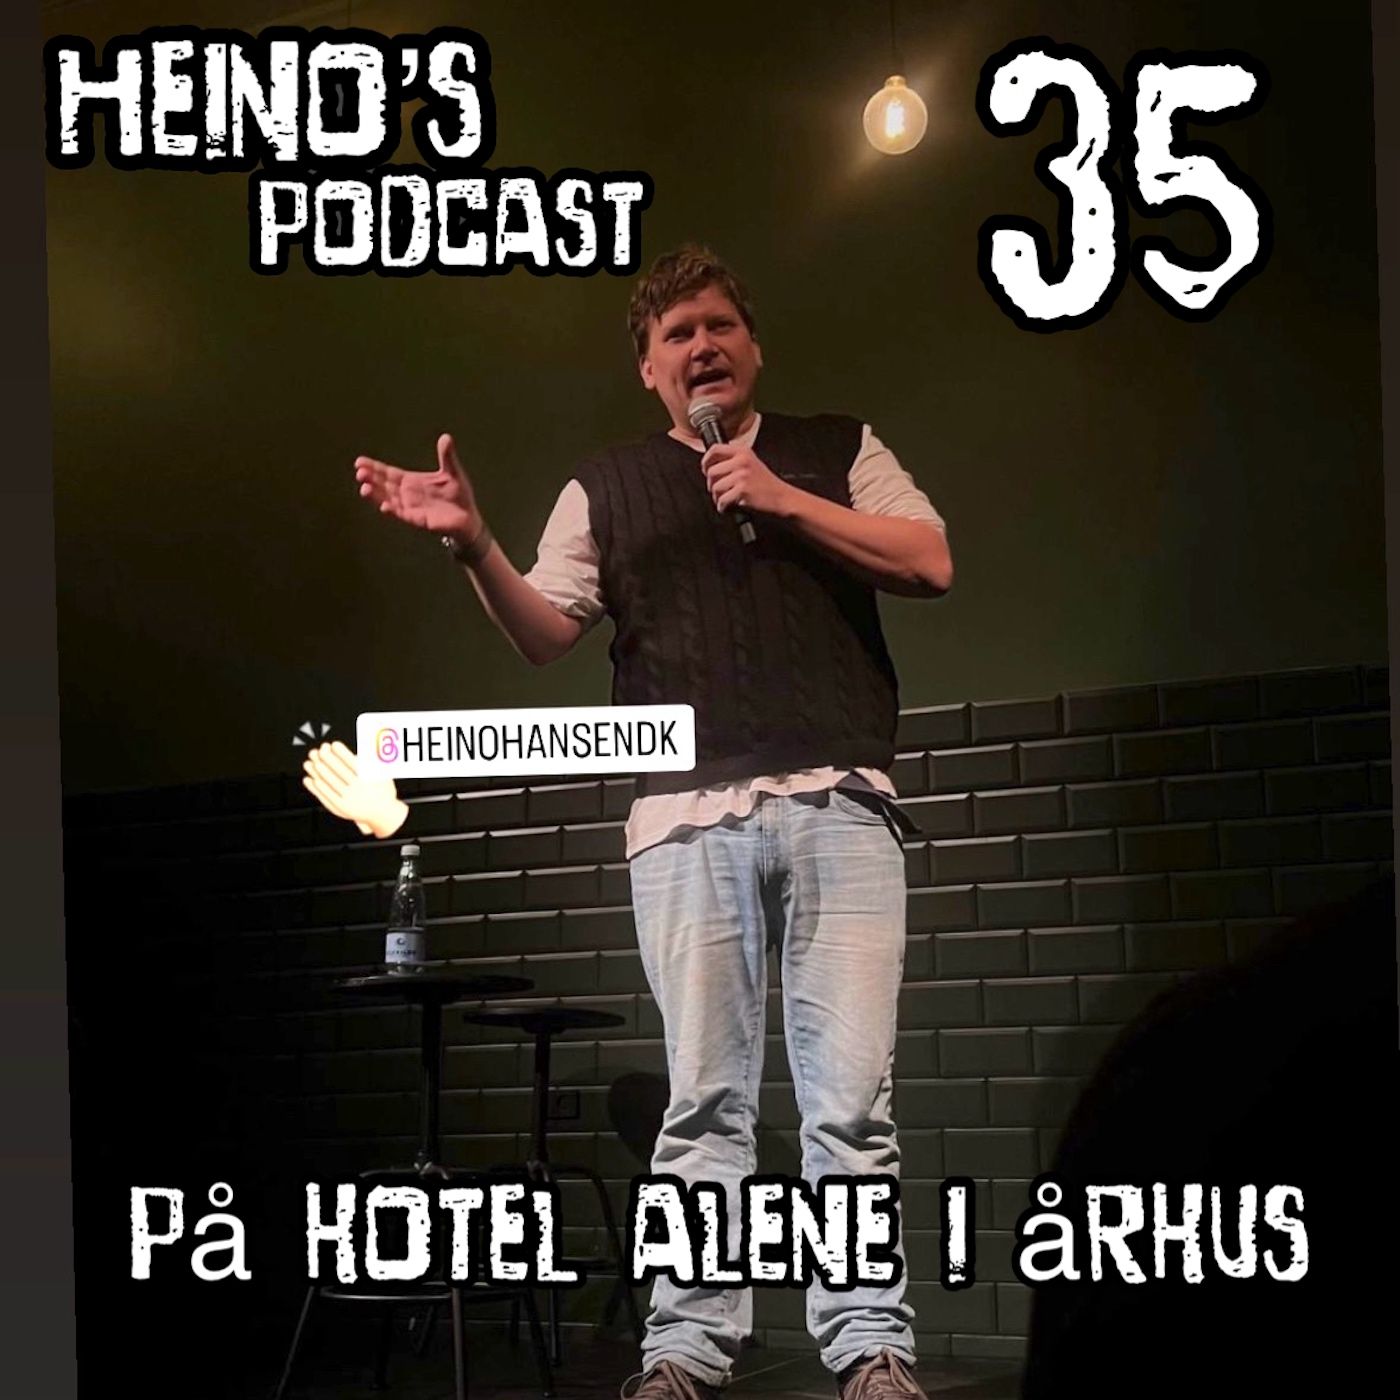 #35 - På hotel alene i Århus